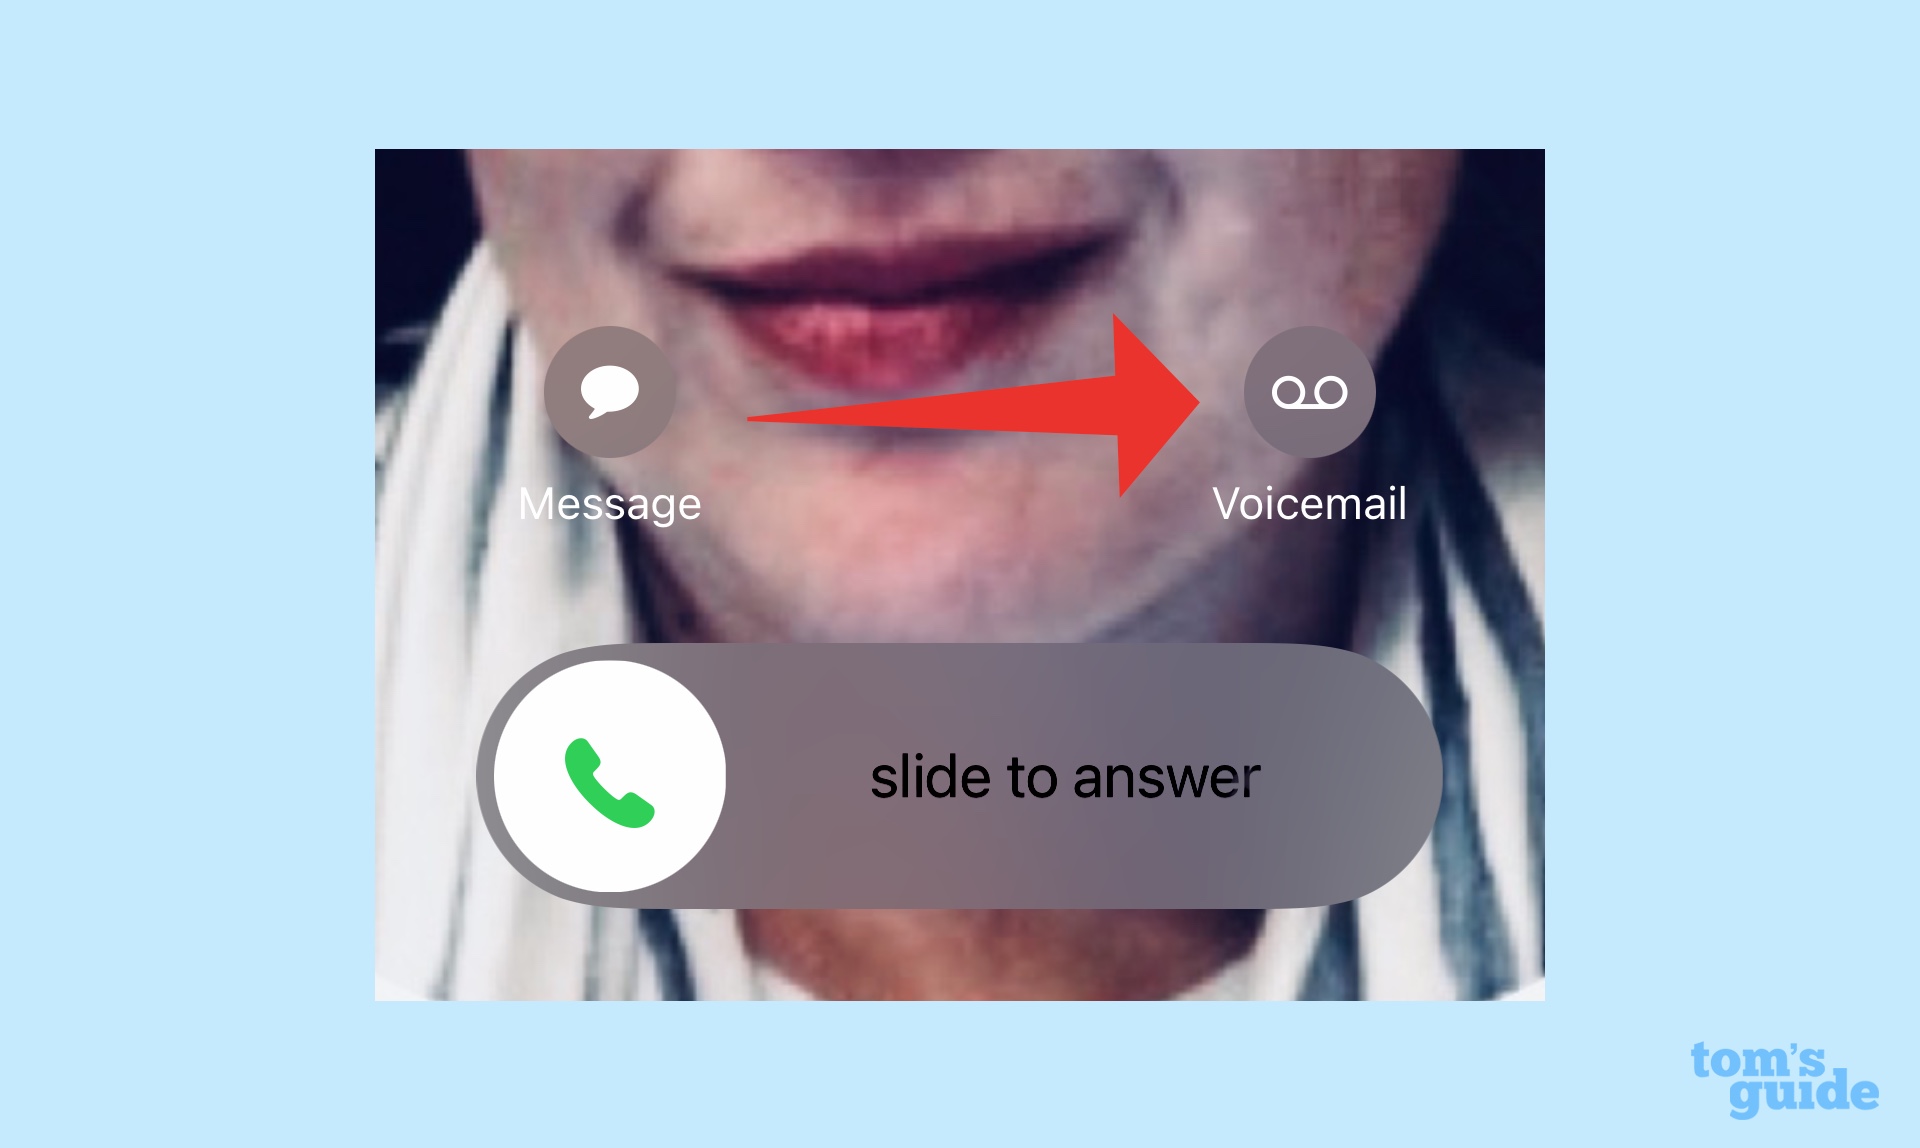 кнопка голосовой почты в телефонном приложении iOS 17